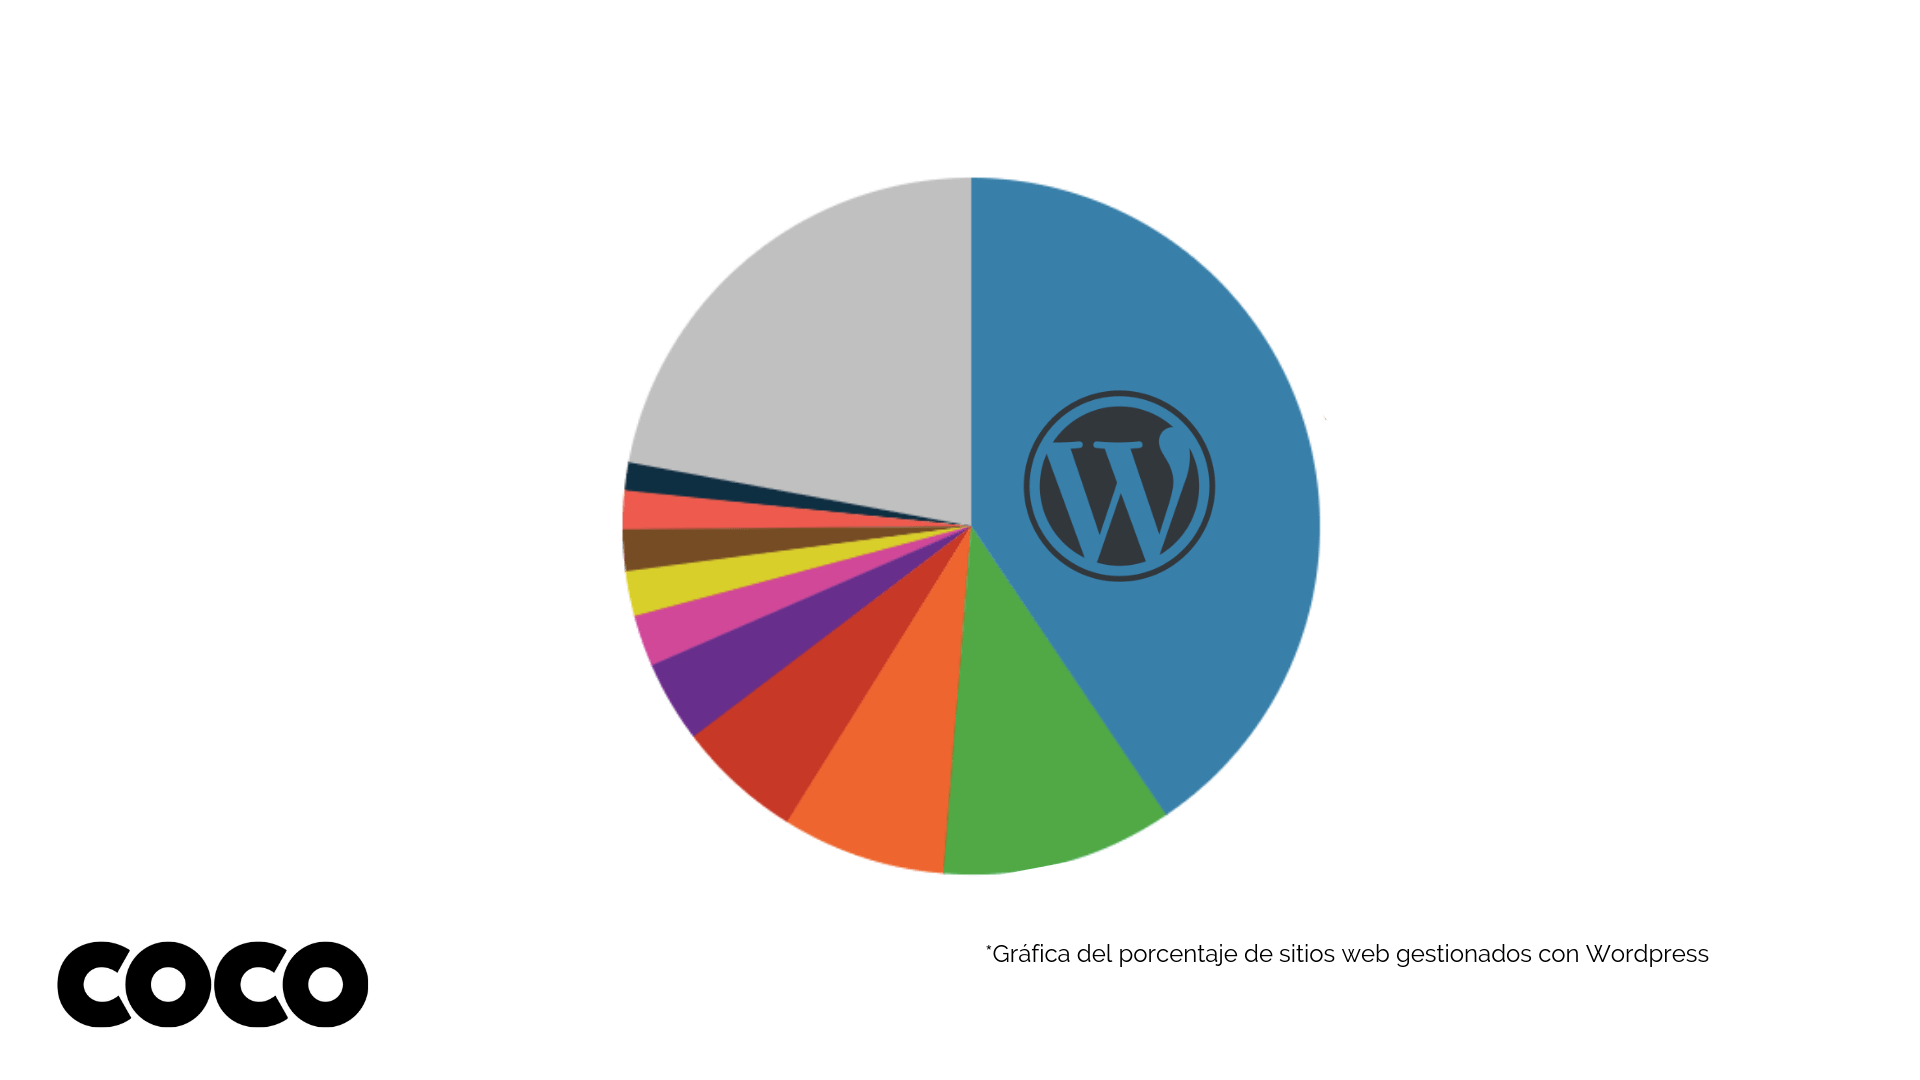 gráfica del porcentaje de sitios web gestionados con wordpress